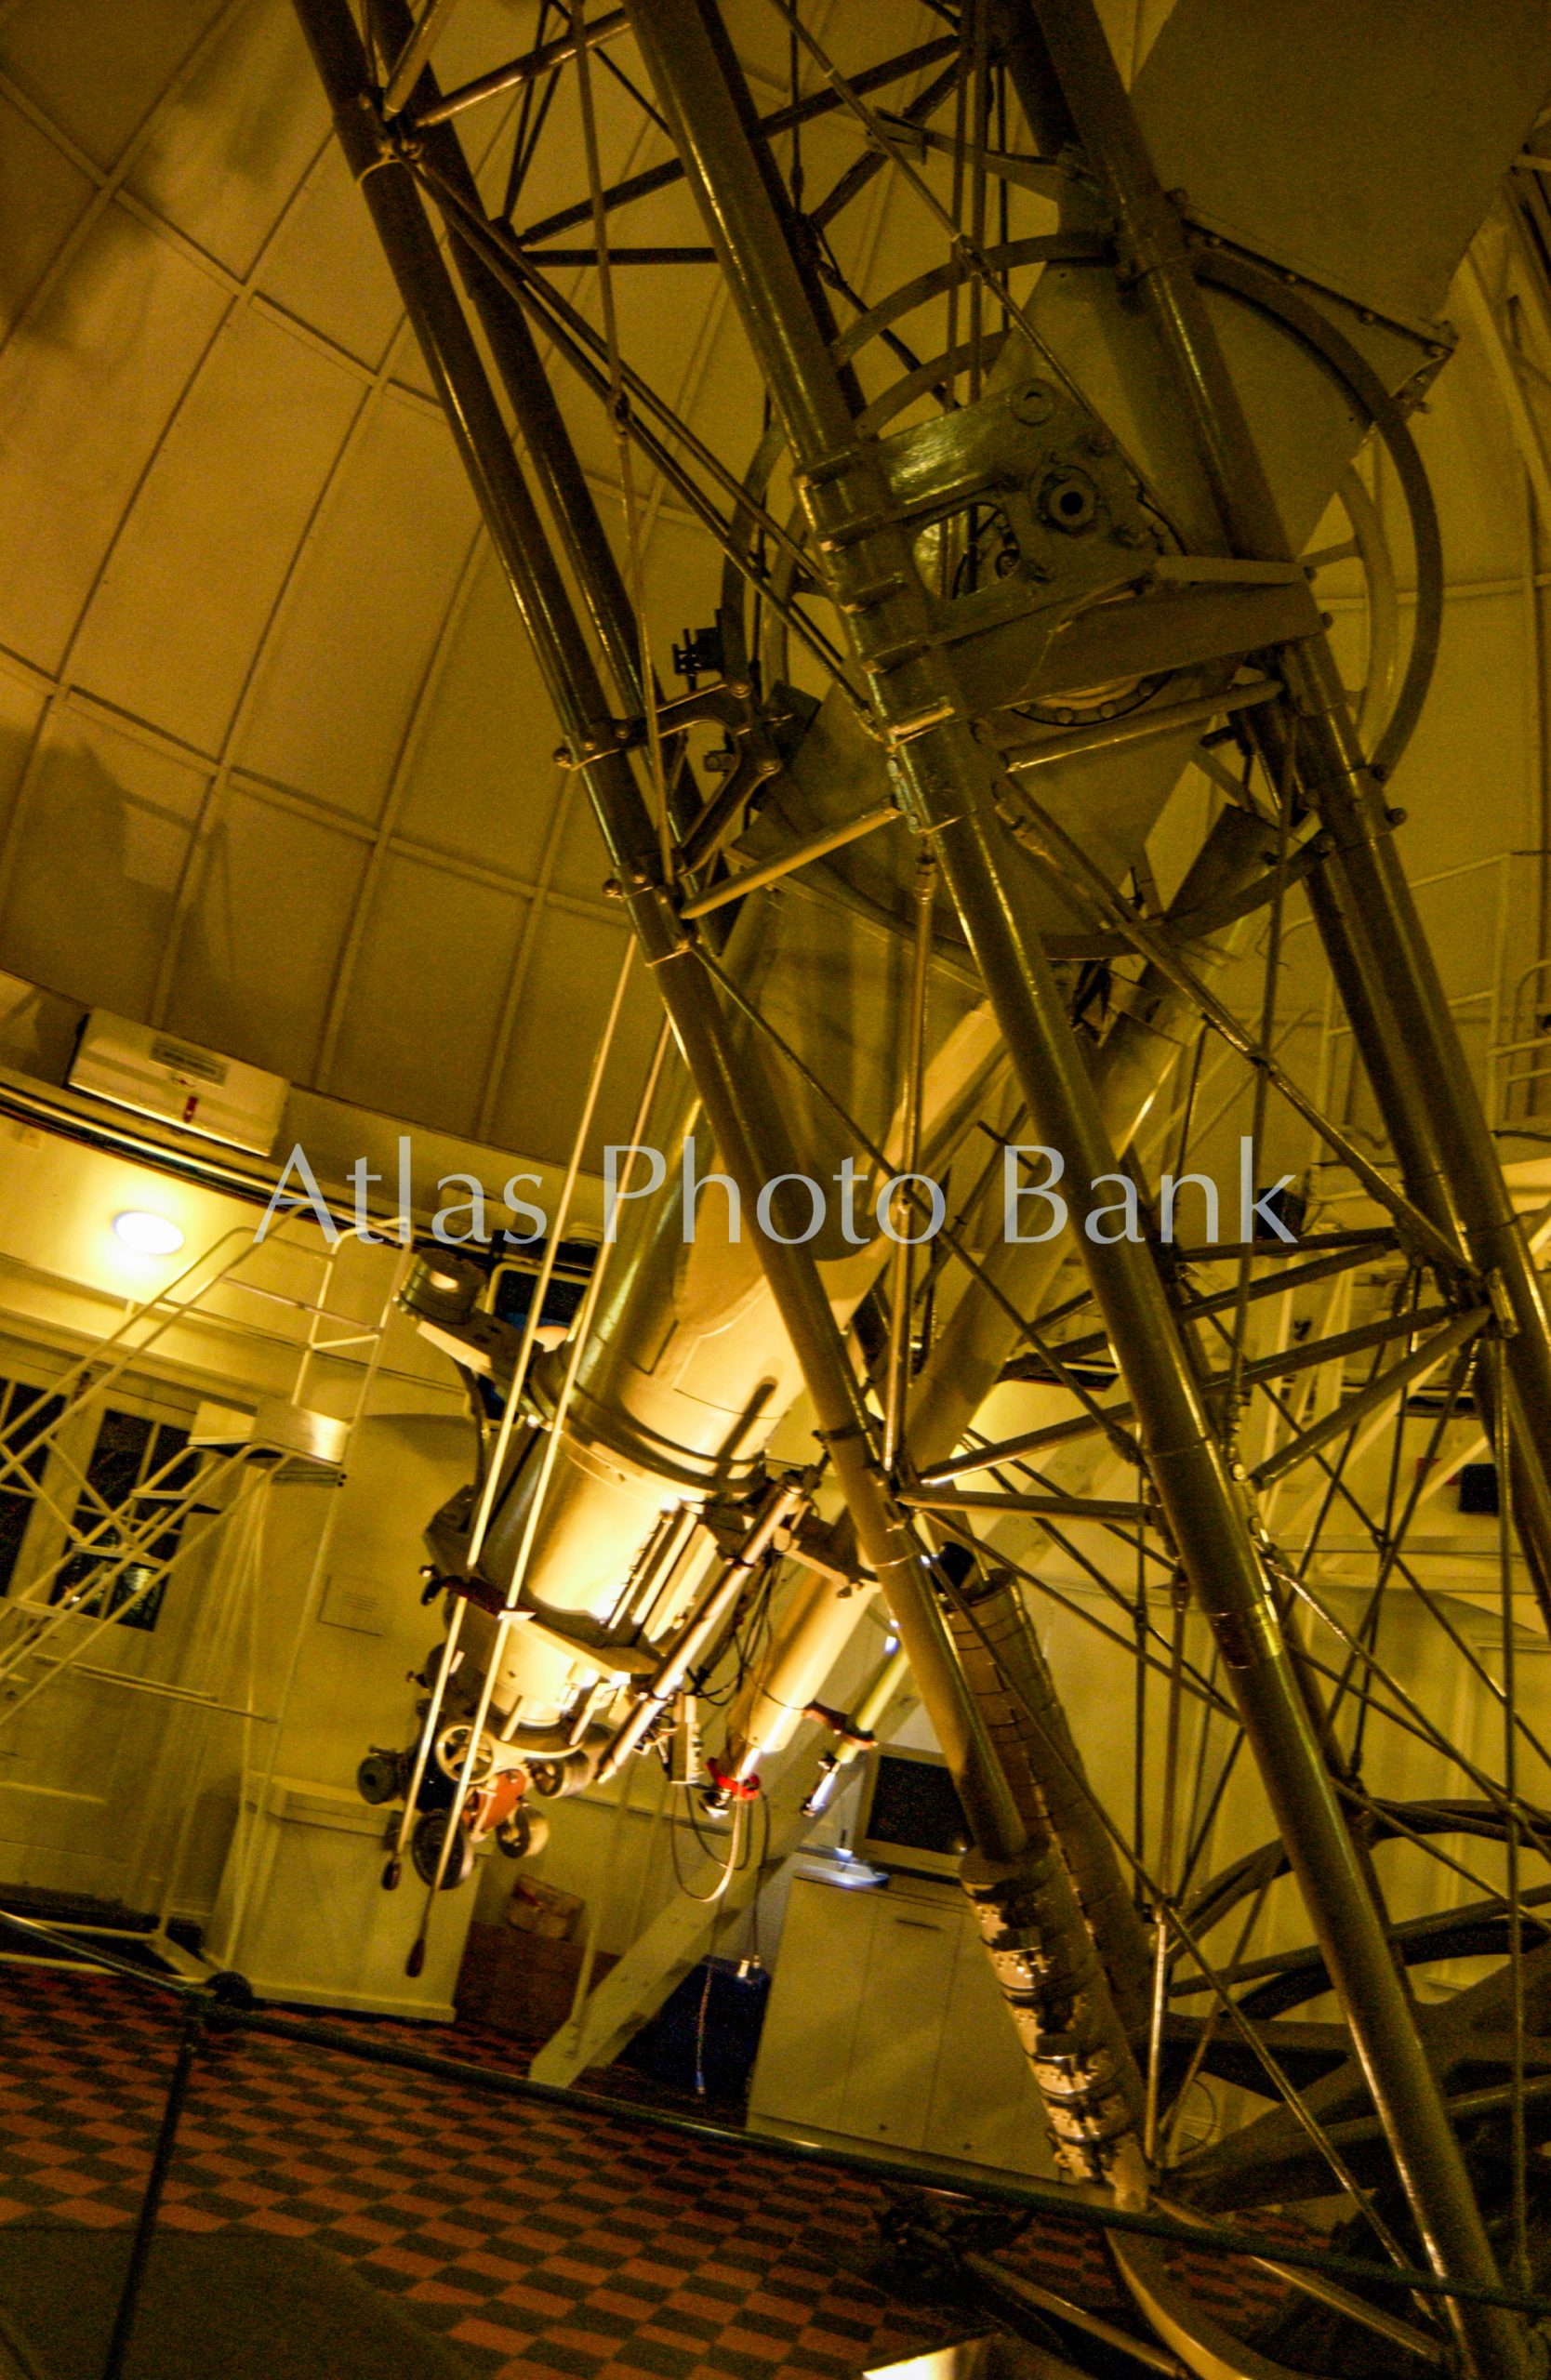 LSP-005-グリニッジ天文台の子午線儀